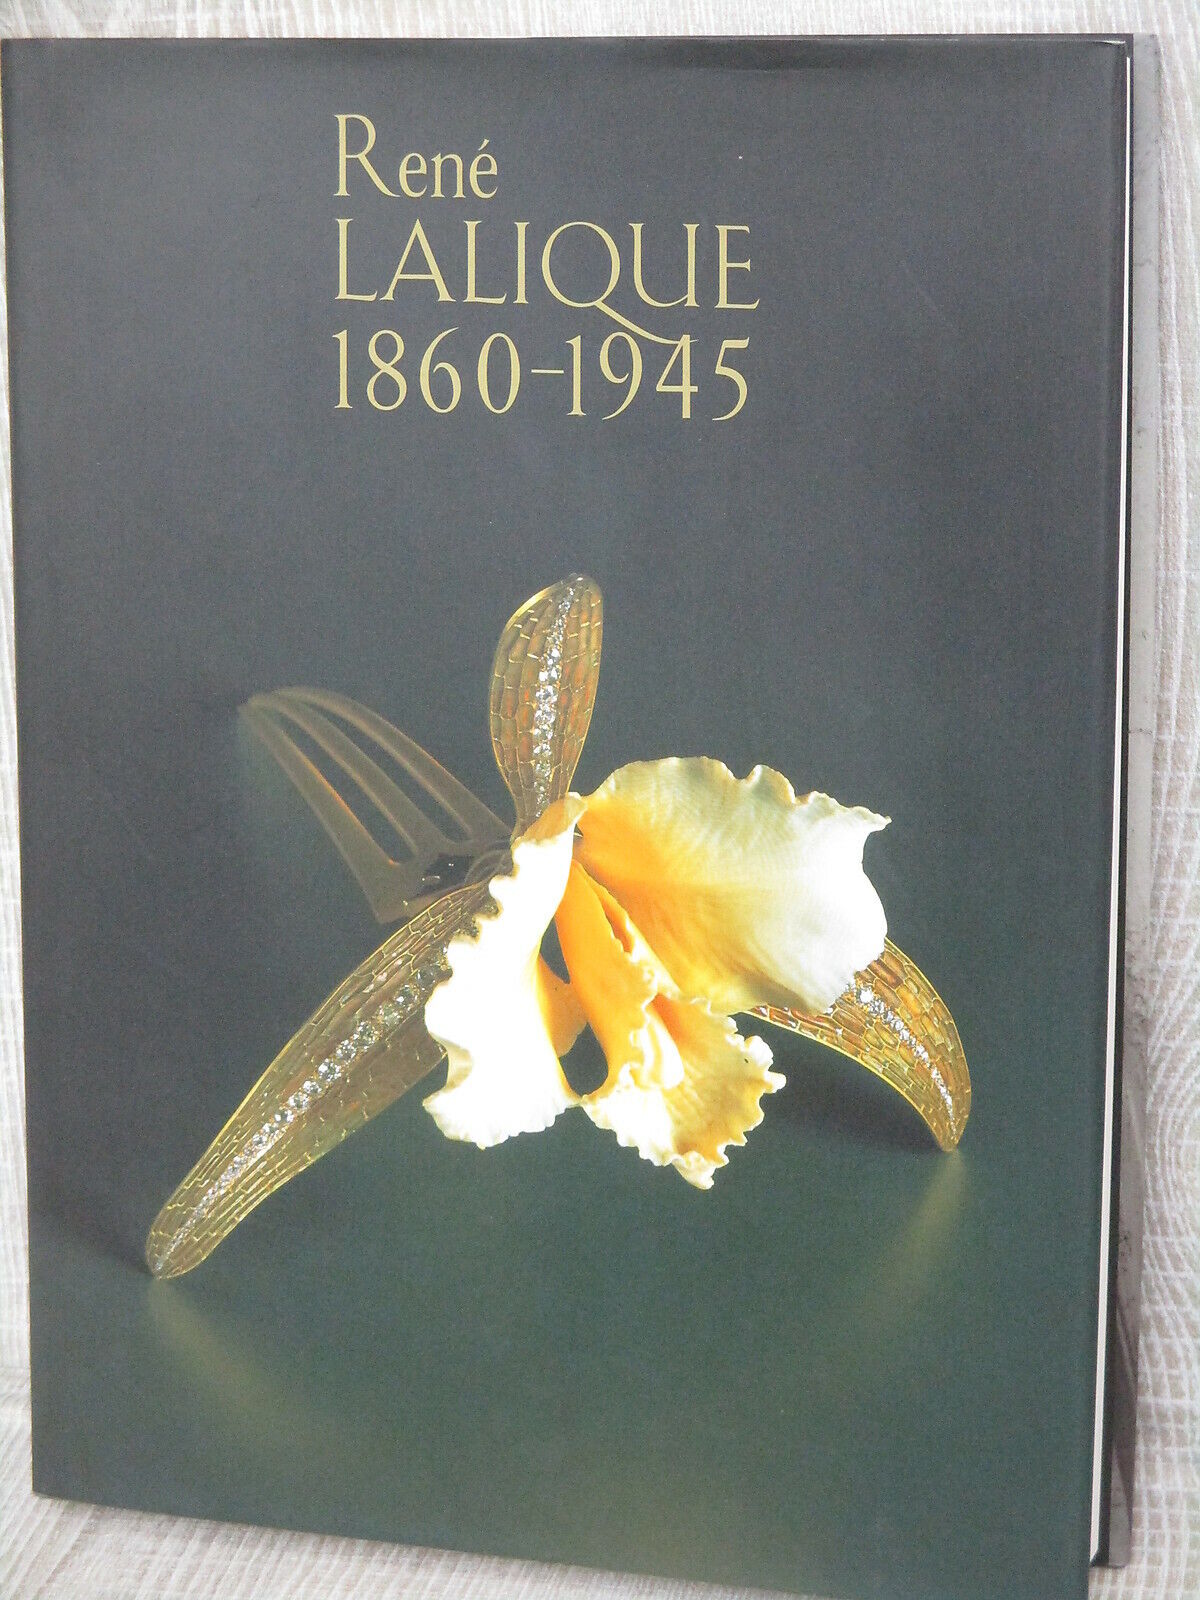 RENE LALIQUE 1860-1945 Art Nouveau Deco Antique Glass Photo Book Ltd Japonism